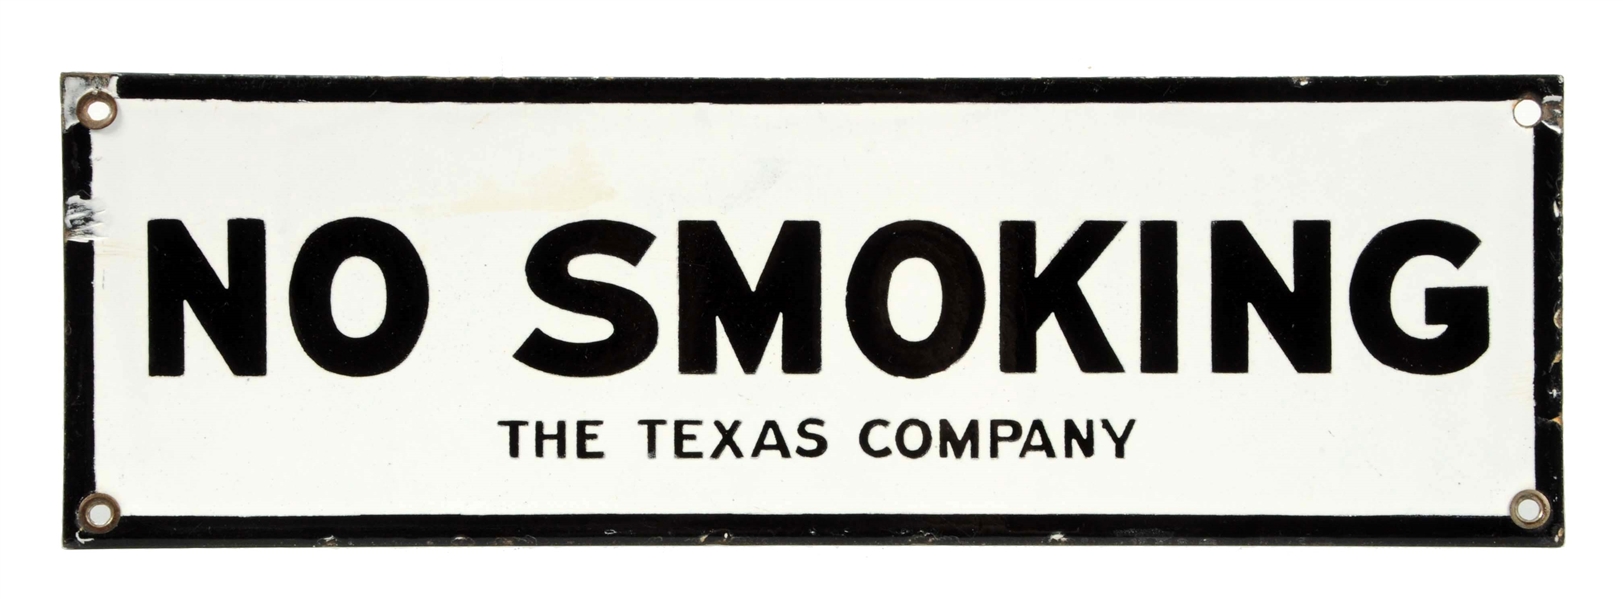 NO SMOKING THE TEXAS COMPANY PORCELAIN SIGN.